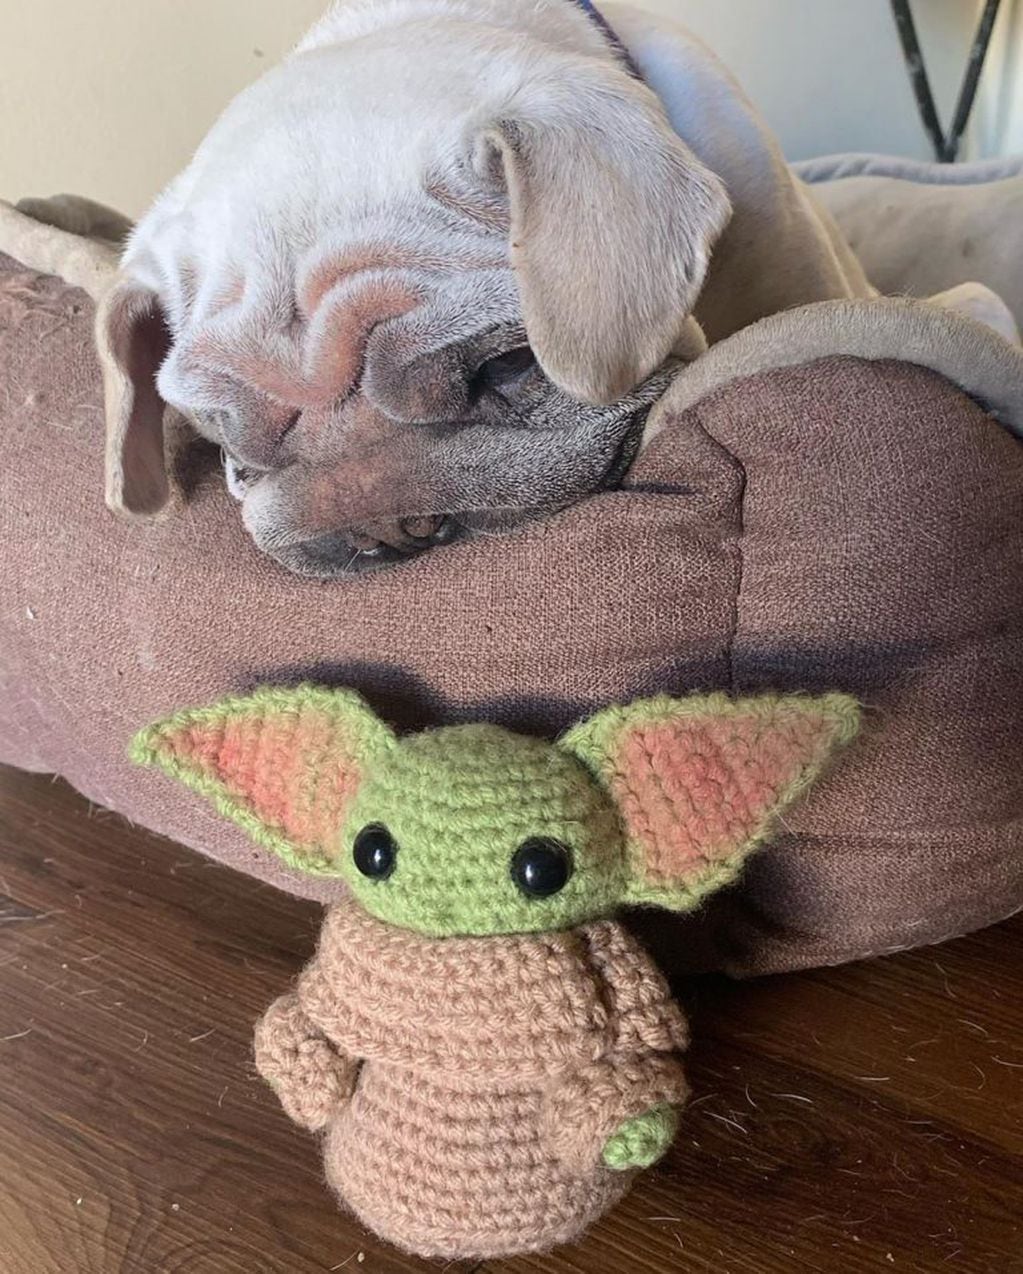 En Instagram, se volvió famoso un perro que tiene una insólita particularidad: se parece al meme viral del bebé Yoda.